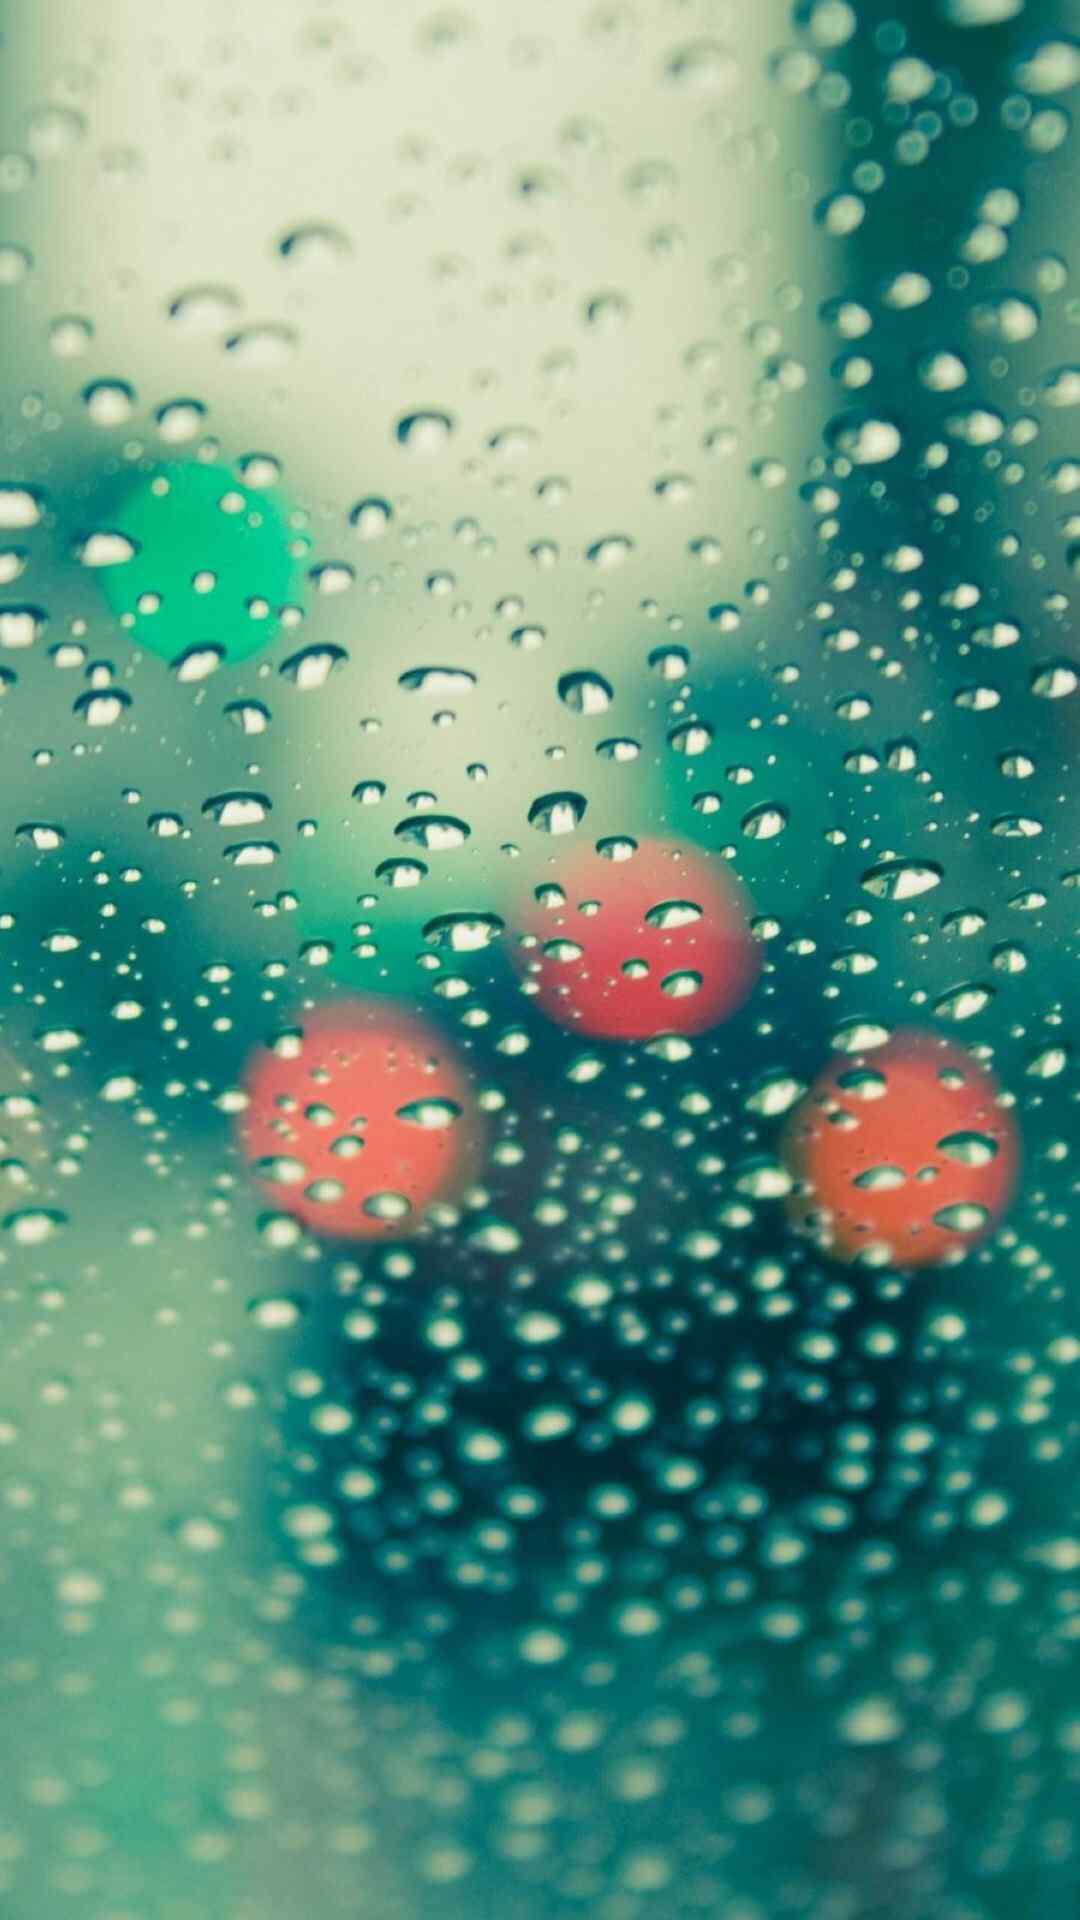 窗上的雨滴唯美清新高清手机壁纸